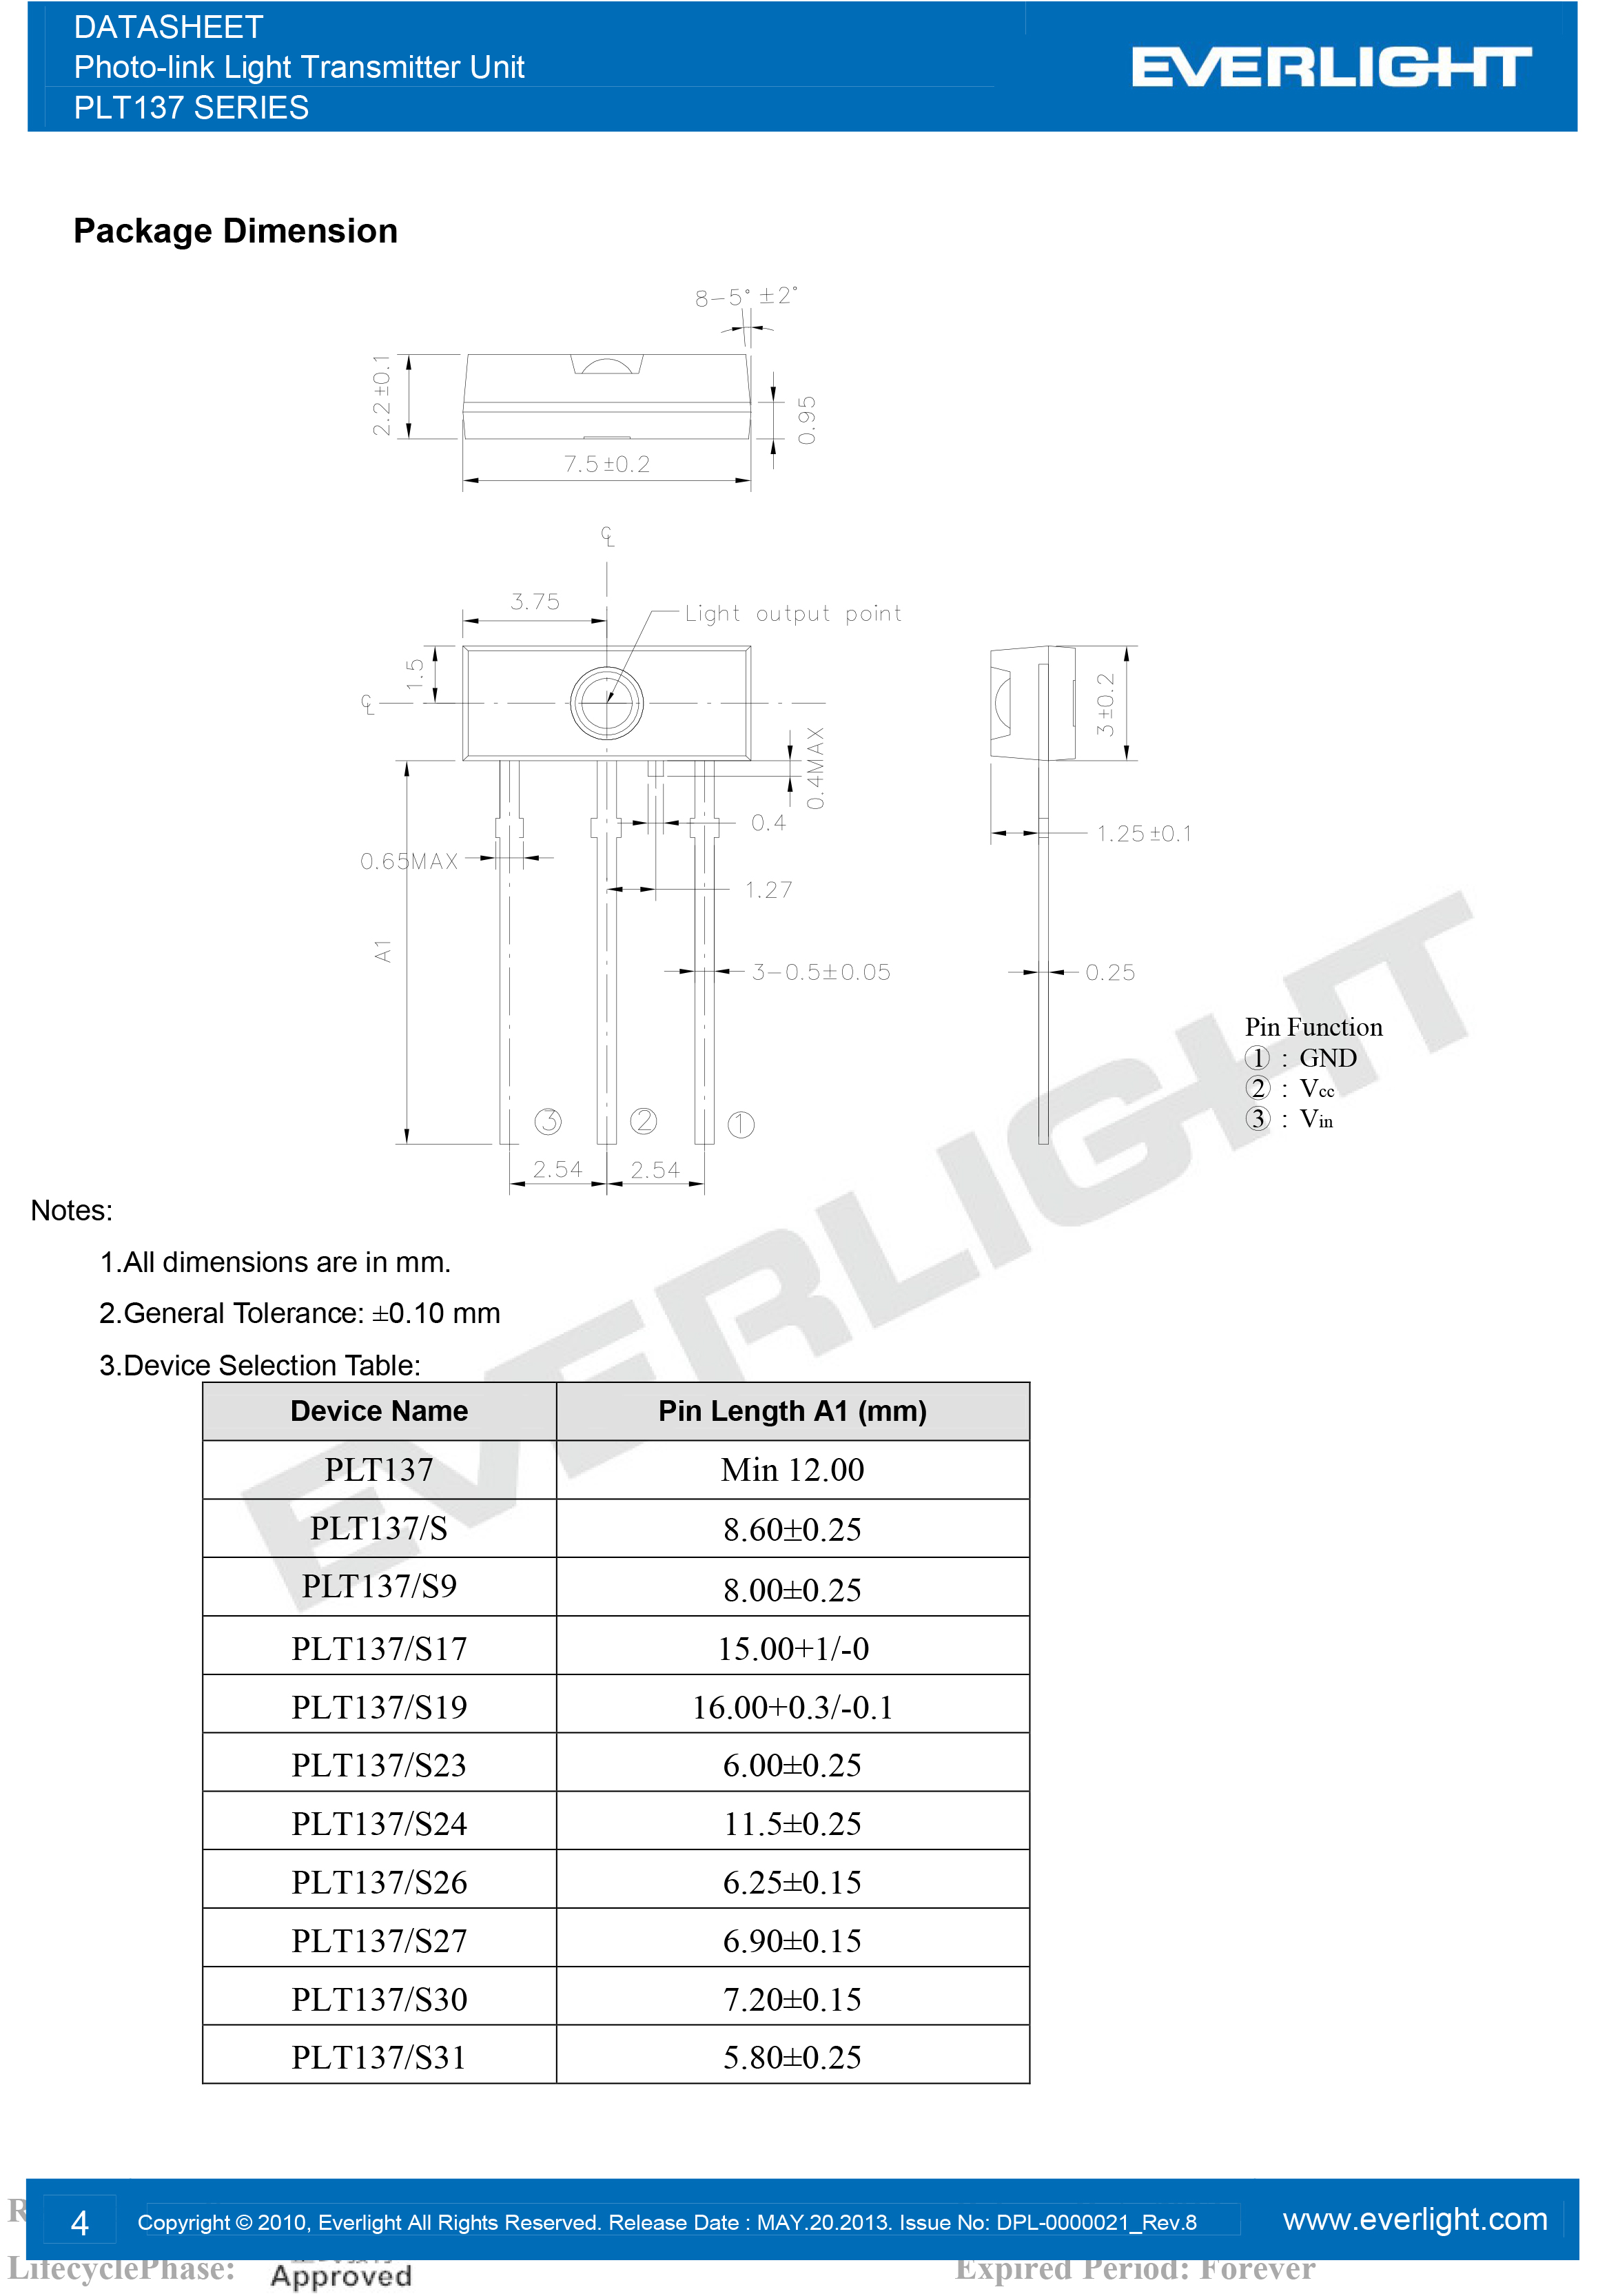 everlight PLT137 Photo-link Light Transmitter Unit Datasheet